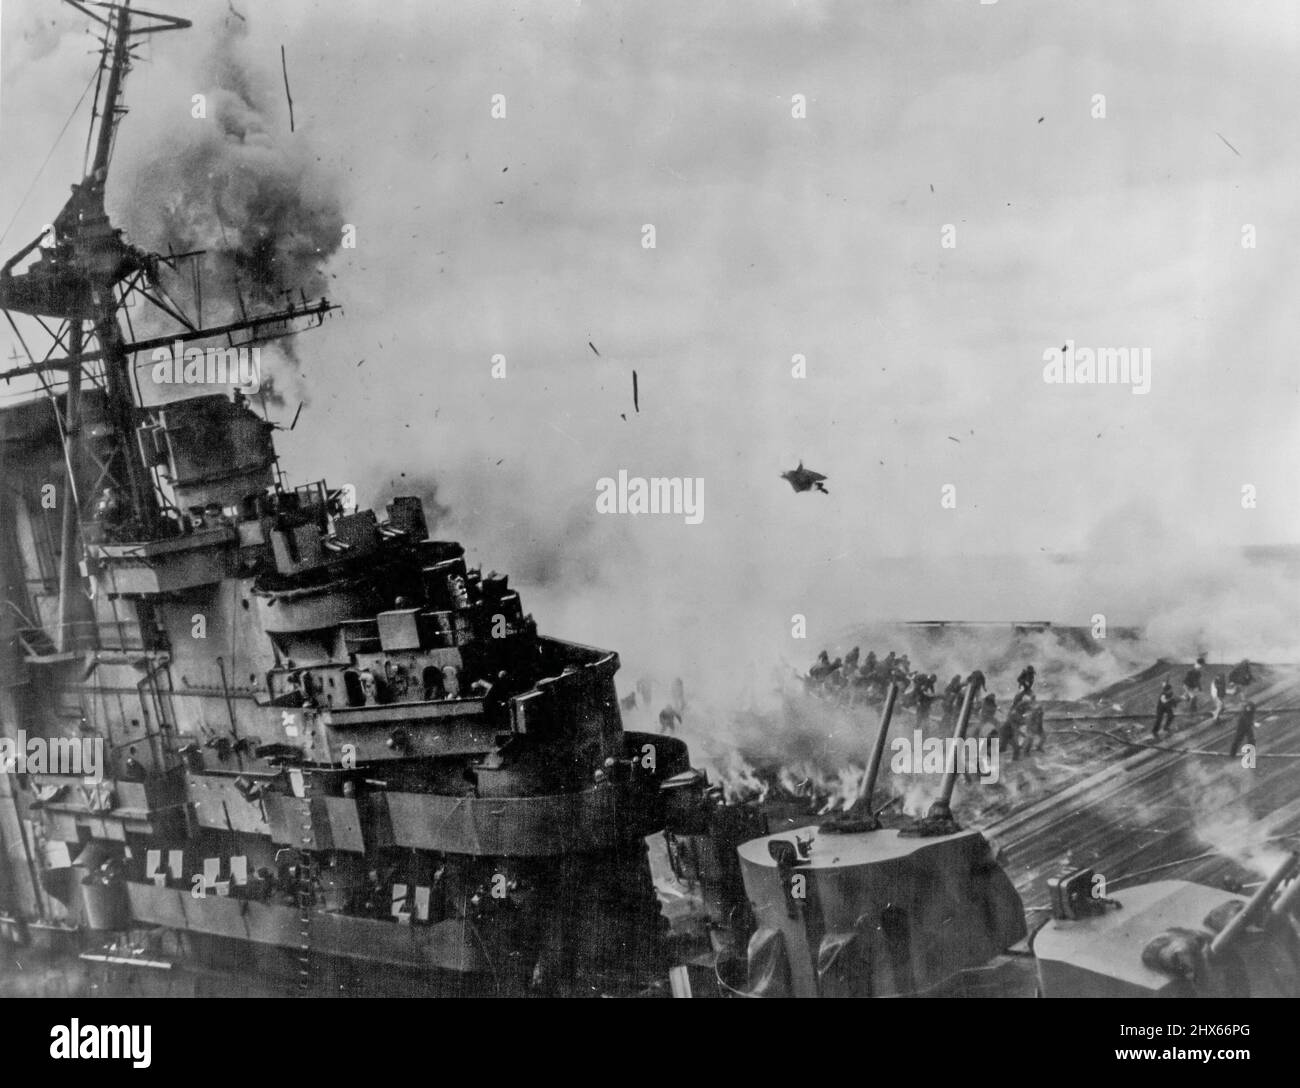 Crippled U.S. Aircraft Carrier vervollständigt Saga of Sea -- am 19. März 1945, die U.S.S. Franklin, ein Frachtführer der Essex-Klasse, wurde von feindlichen Bomben getroffen, während er an Luftangriffen auf die japanische Flotte in der feindlichen Binnenmeer teilnahm. Die Fluggesellschaft, die weniger als 60 Meilen (96 km) von der japanischen Küste entfernt war und viele ihrer Flugzeuge voll bewaffnet und betankt war, wurde von einem japanischen Tauchbomber angegriffen, der zwei Treffer mit einer Vierteltonnenpanzerbrechenden Bombe erzielte. Das Schiff war bald ein Flammeninferno mit Stockfoto